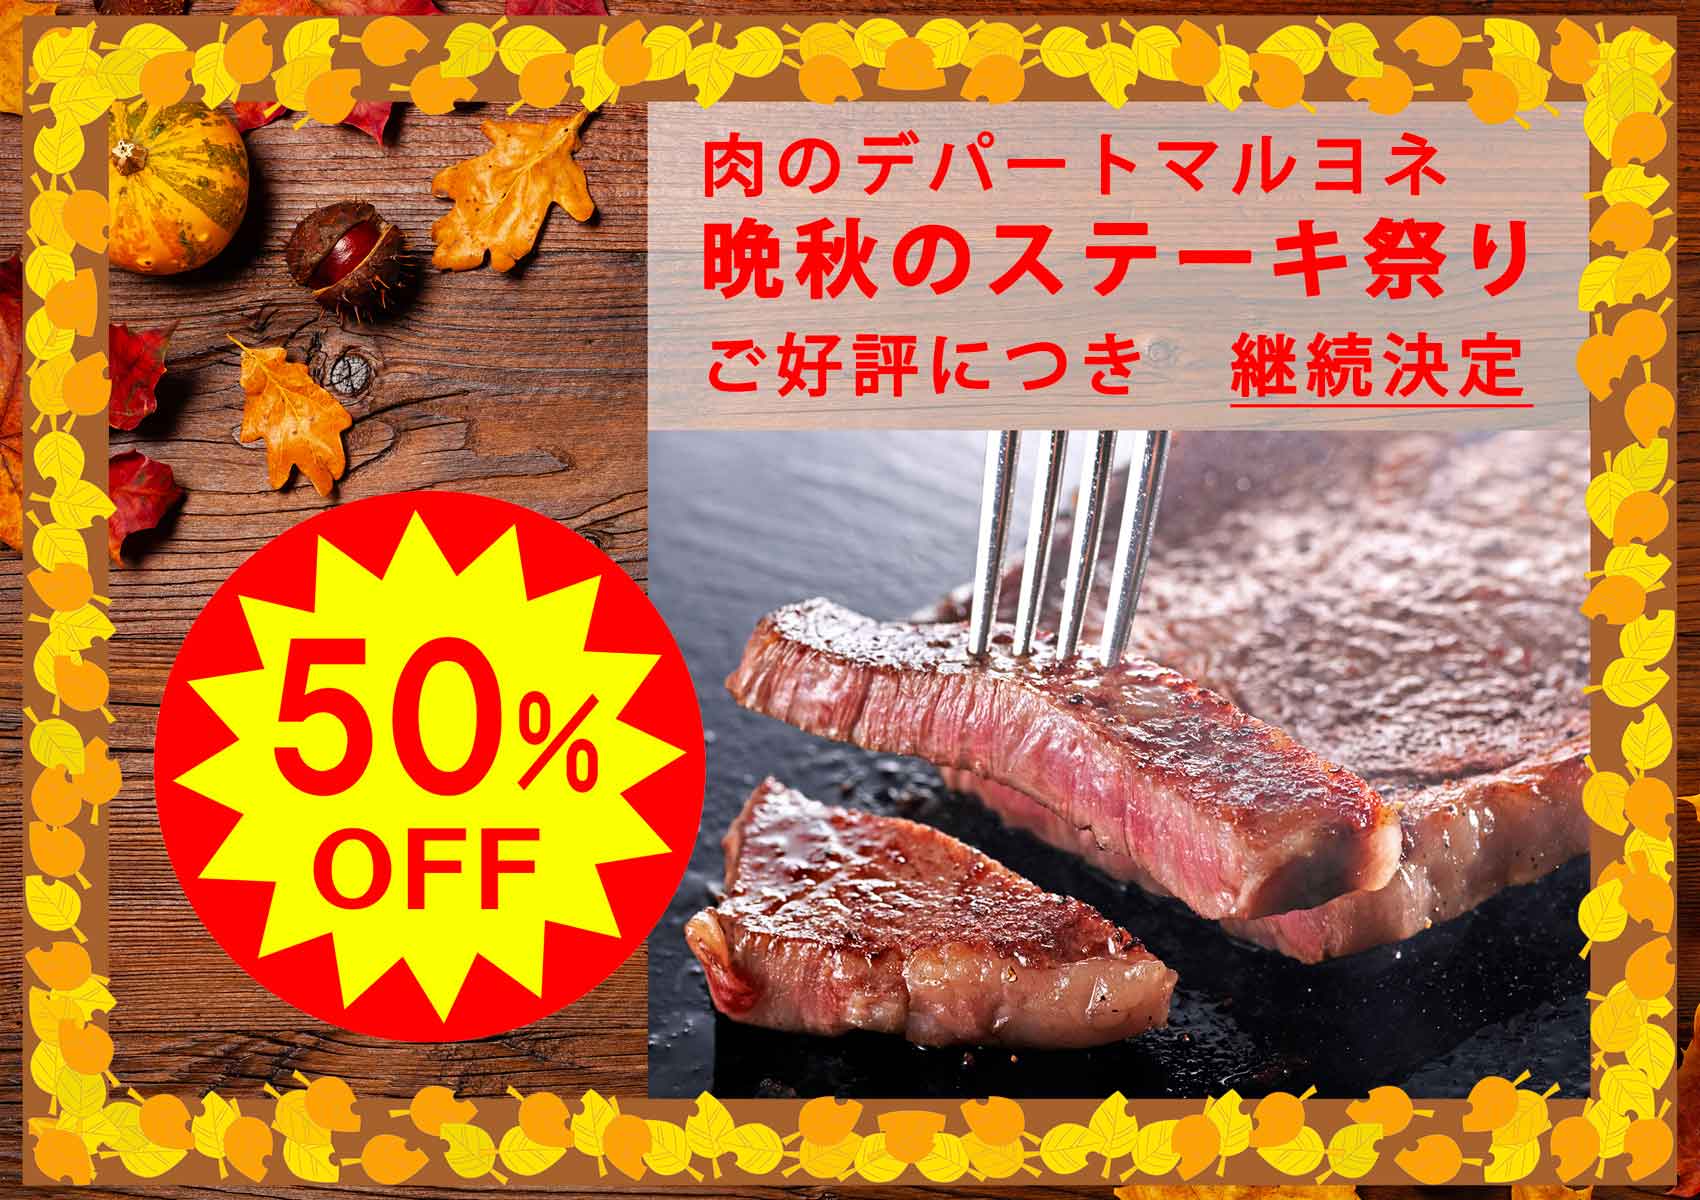 「晩秋のステーキ祭り開催中」神戸ビーフサーロインステーキ　100g　通常　3,000円→1,500円